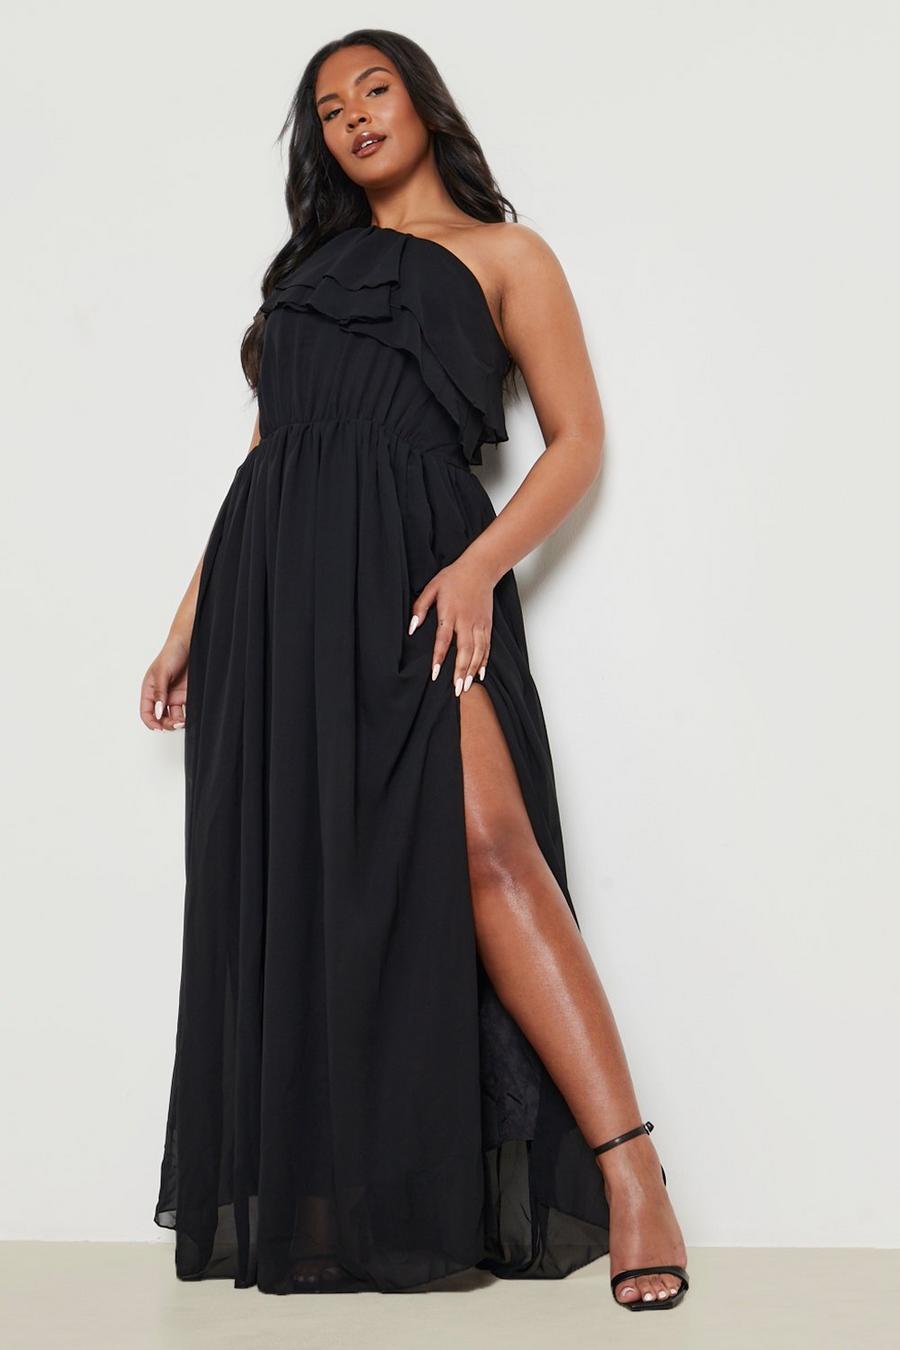 שחור black שמלת מקסי לאירועים One Shoulder עם שסע מידות גדולות